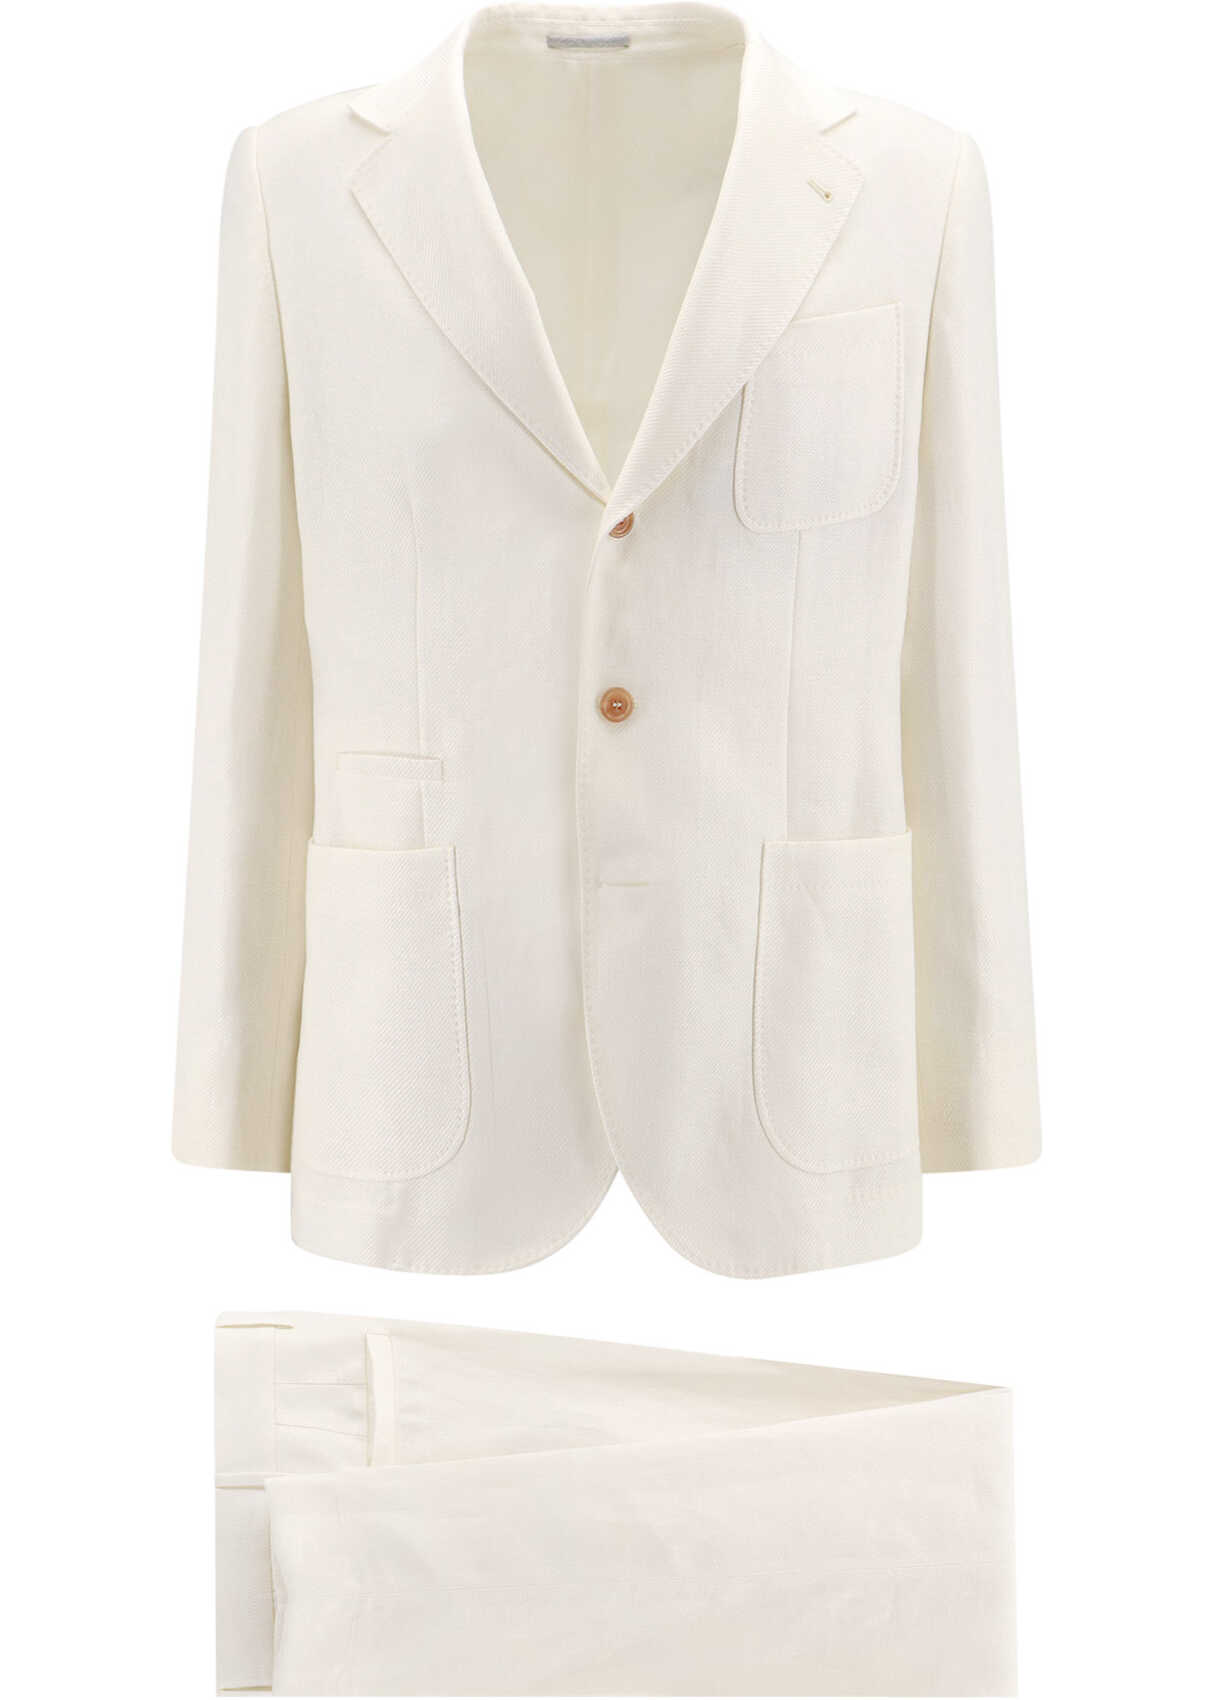 Brunello Cucinelli Suit White b-mall.ro